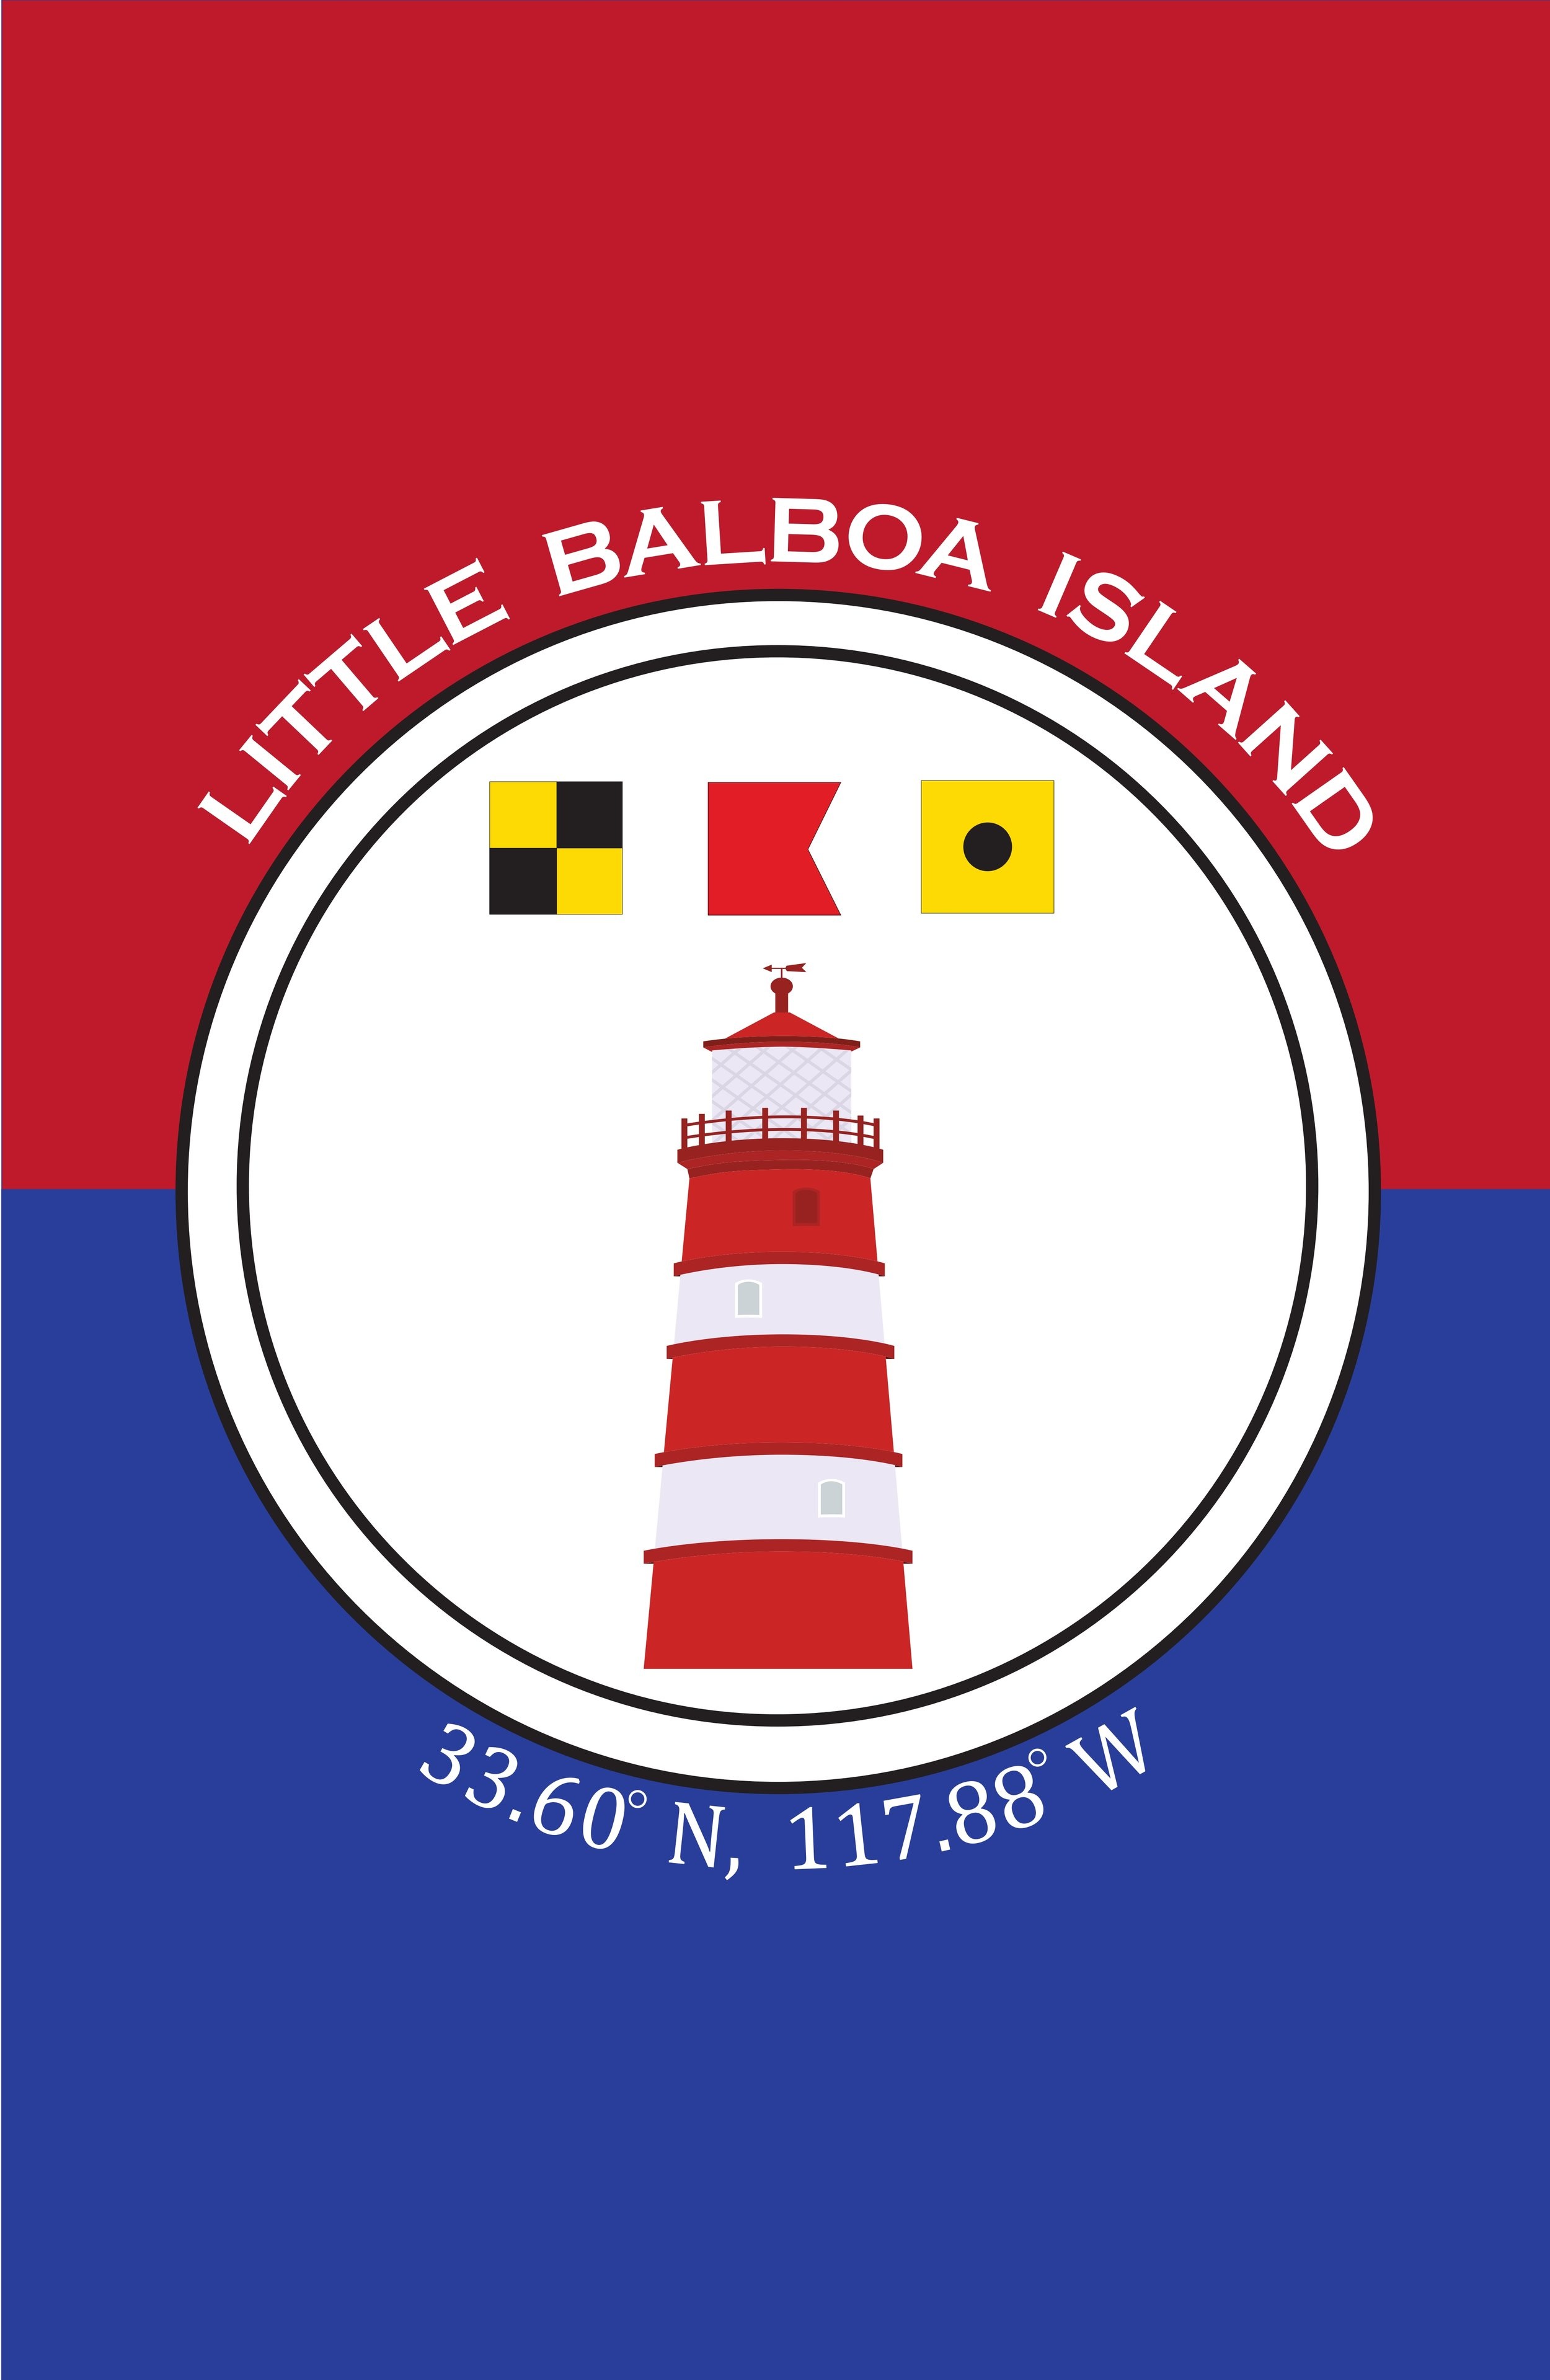 Little Balboa Island